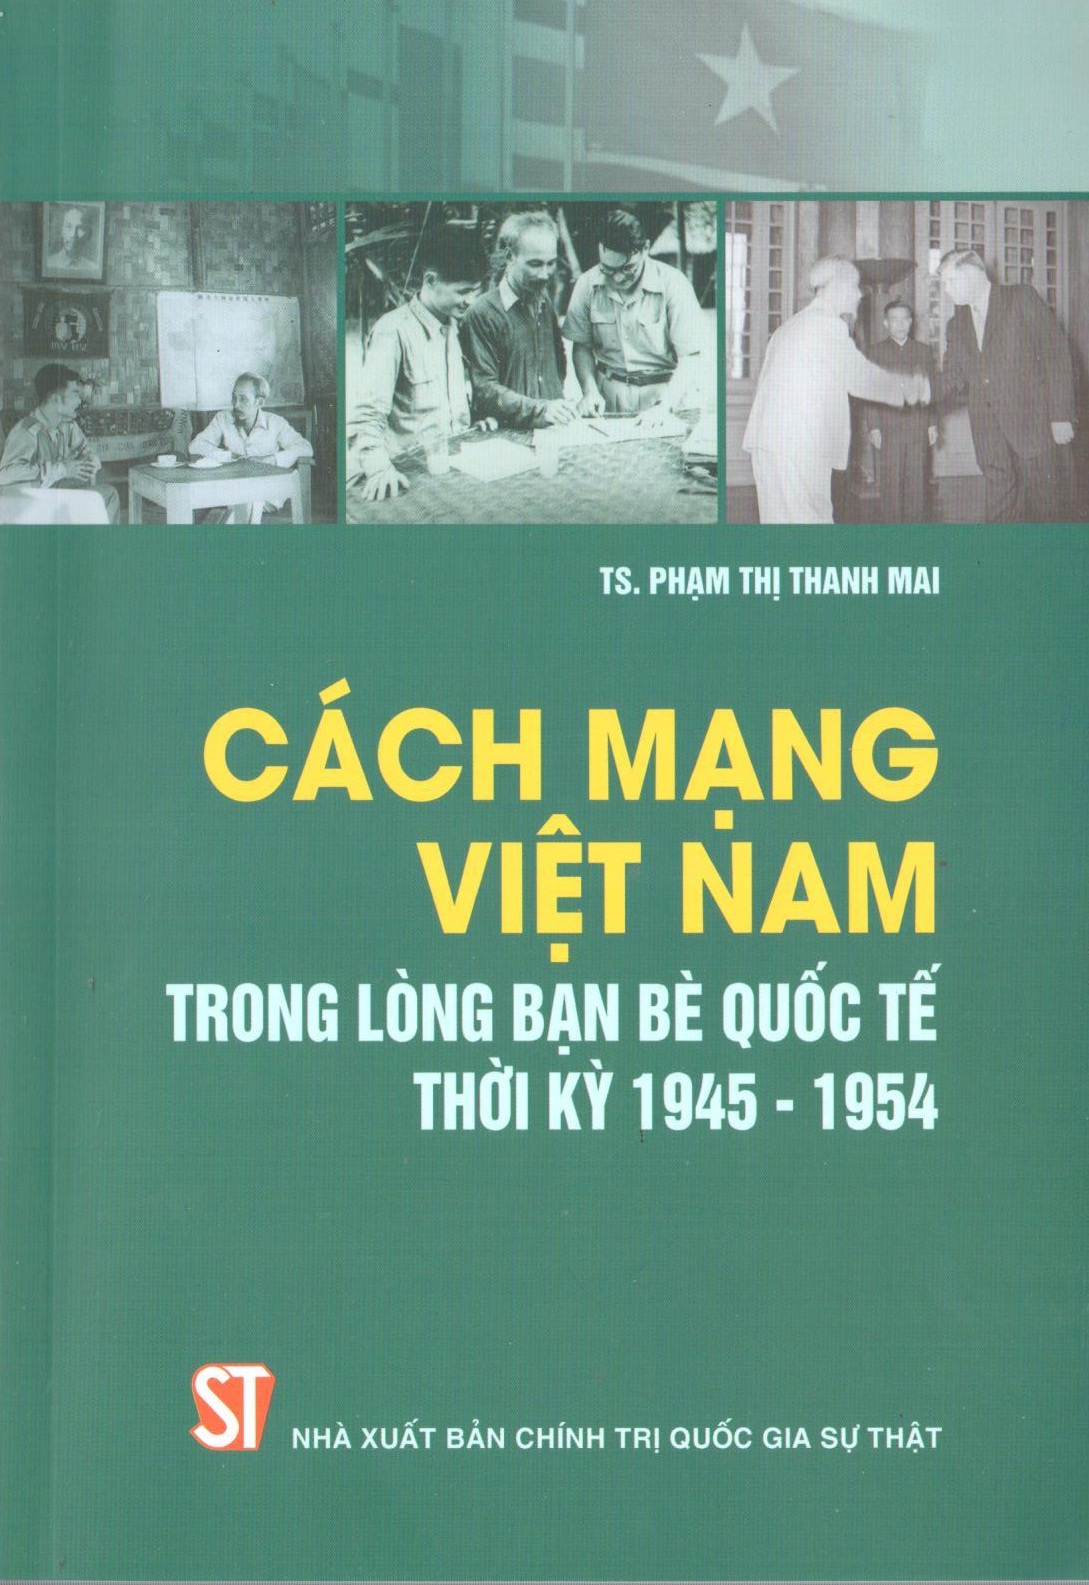 Cách mạng Việt Nam trong lòng bạn bè quốc tế thời kỳ 1945 - 1954